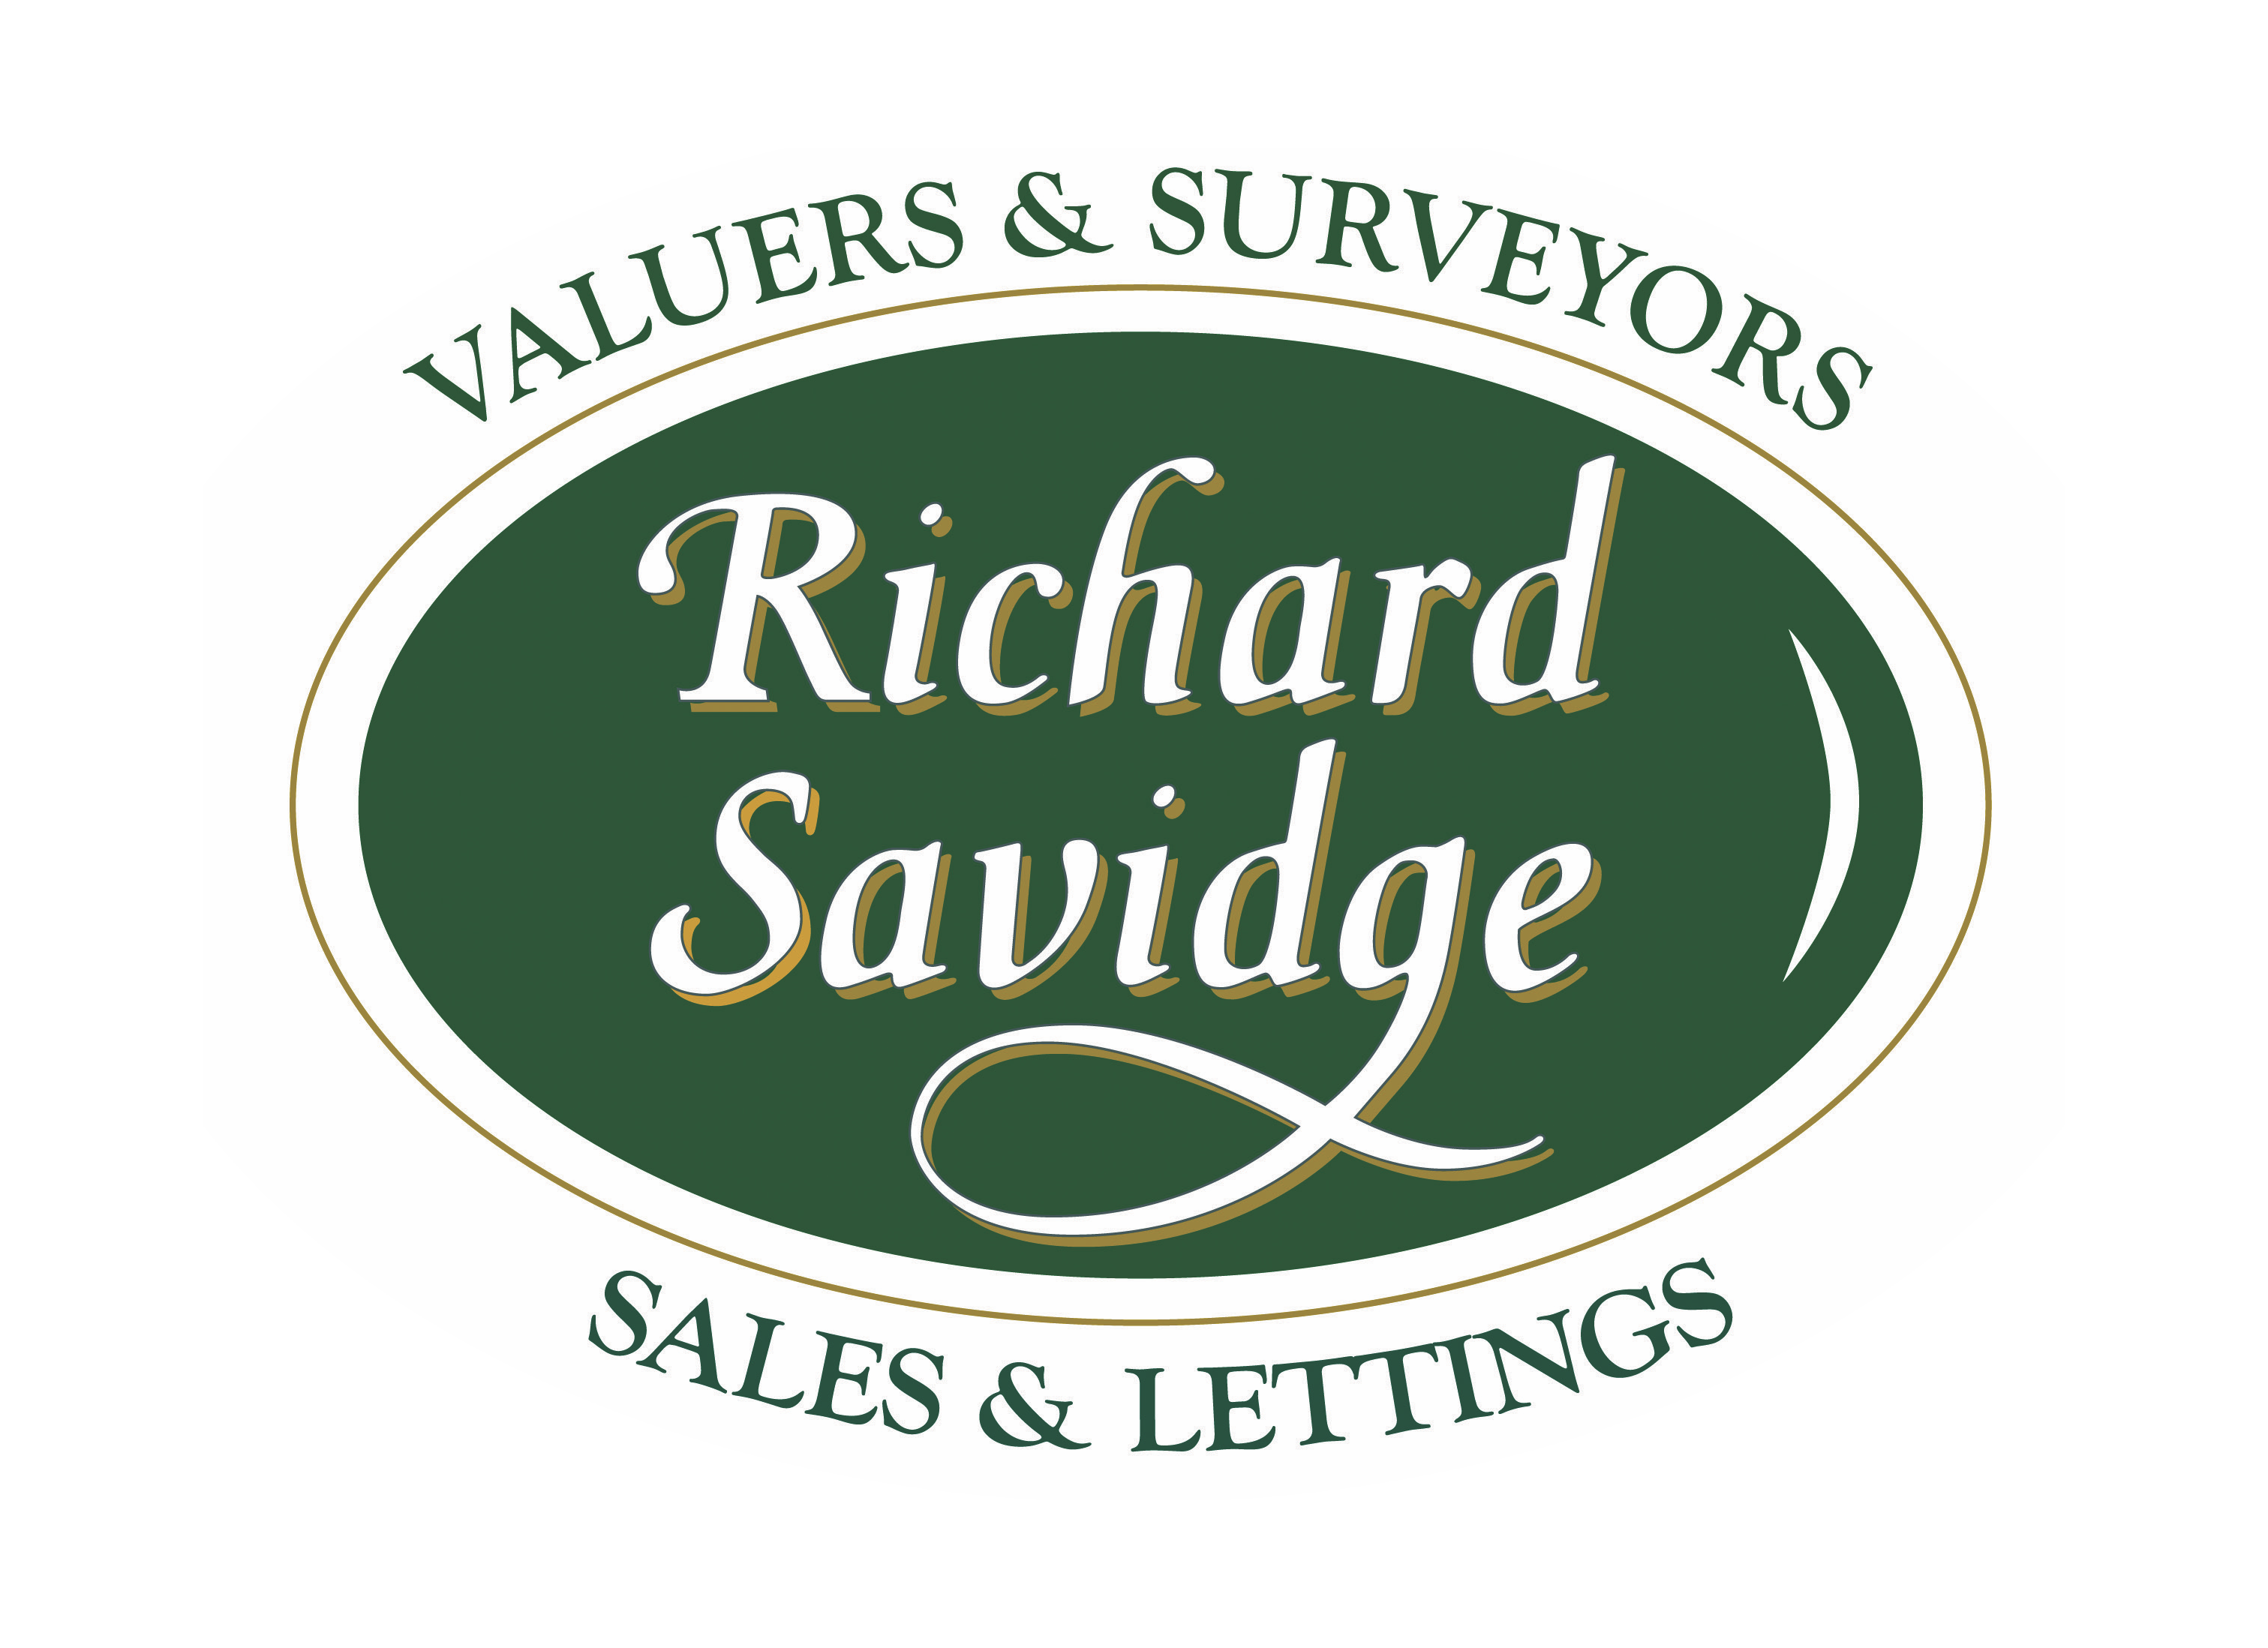 Richard Savidge Sales & Lettings